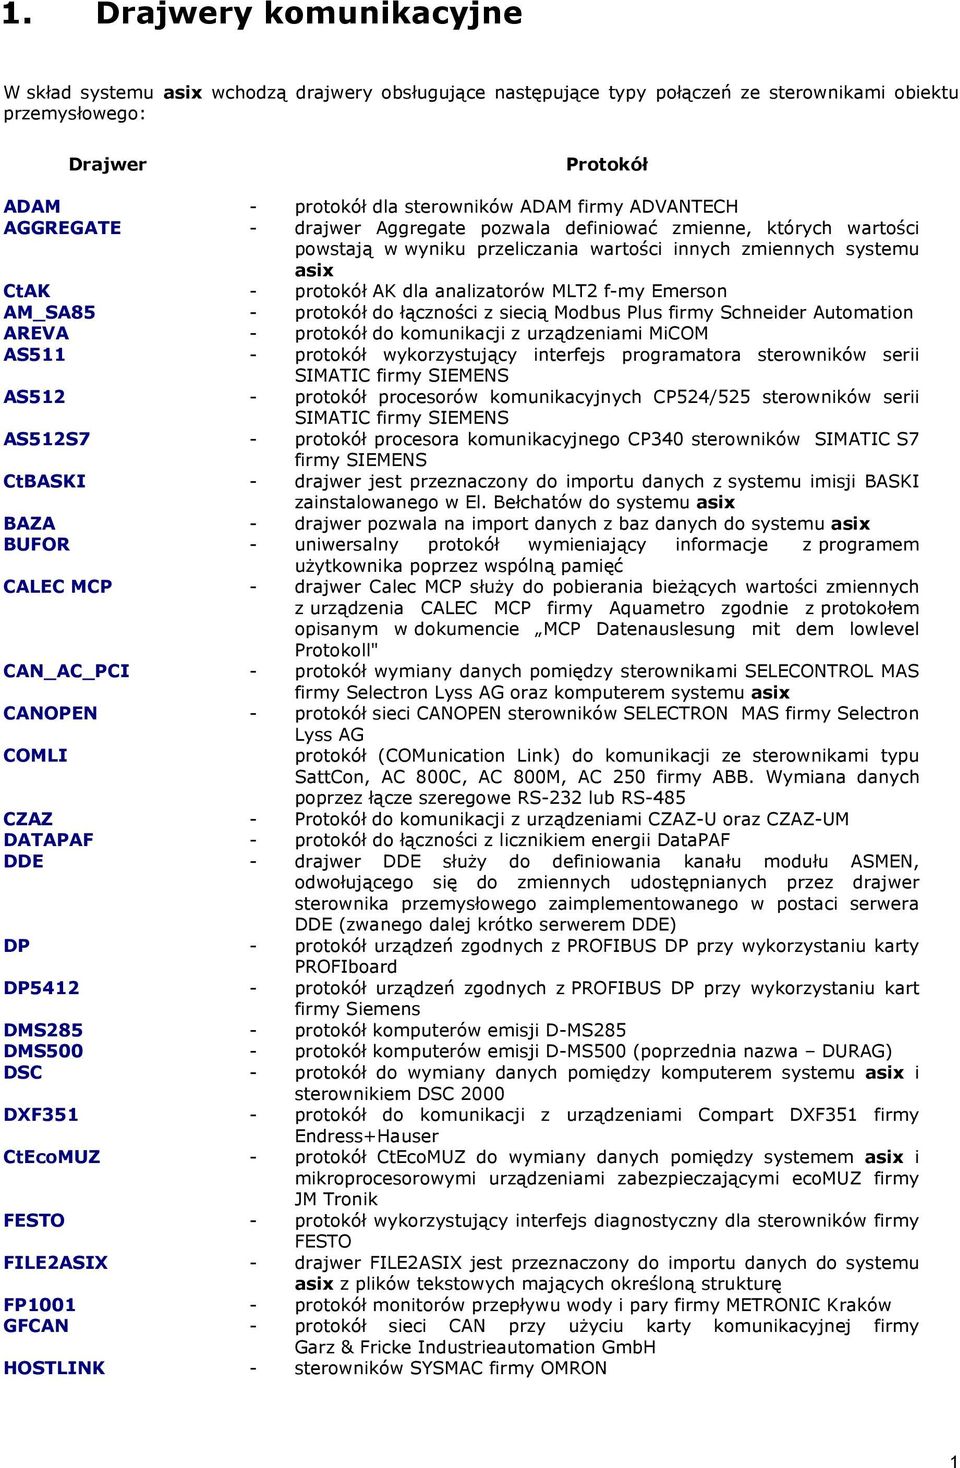 MLT2 f-my Emerson AM_SA85 - protokół do łączności z siecią Modbus Plus firmy Schneider Automation AREVA - protokół do komunikacji z urządzeniami MiCOM AS511 - protokół wykorzystujący interfejs